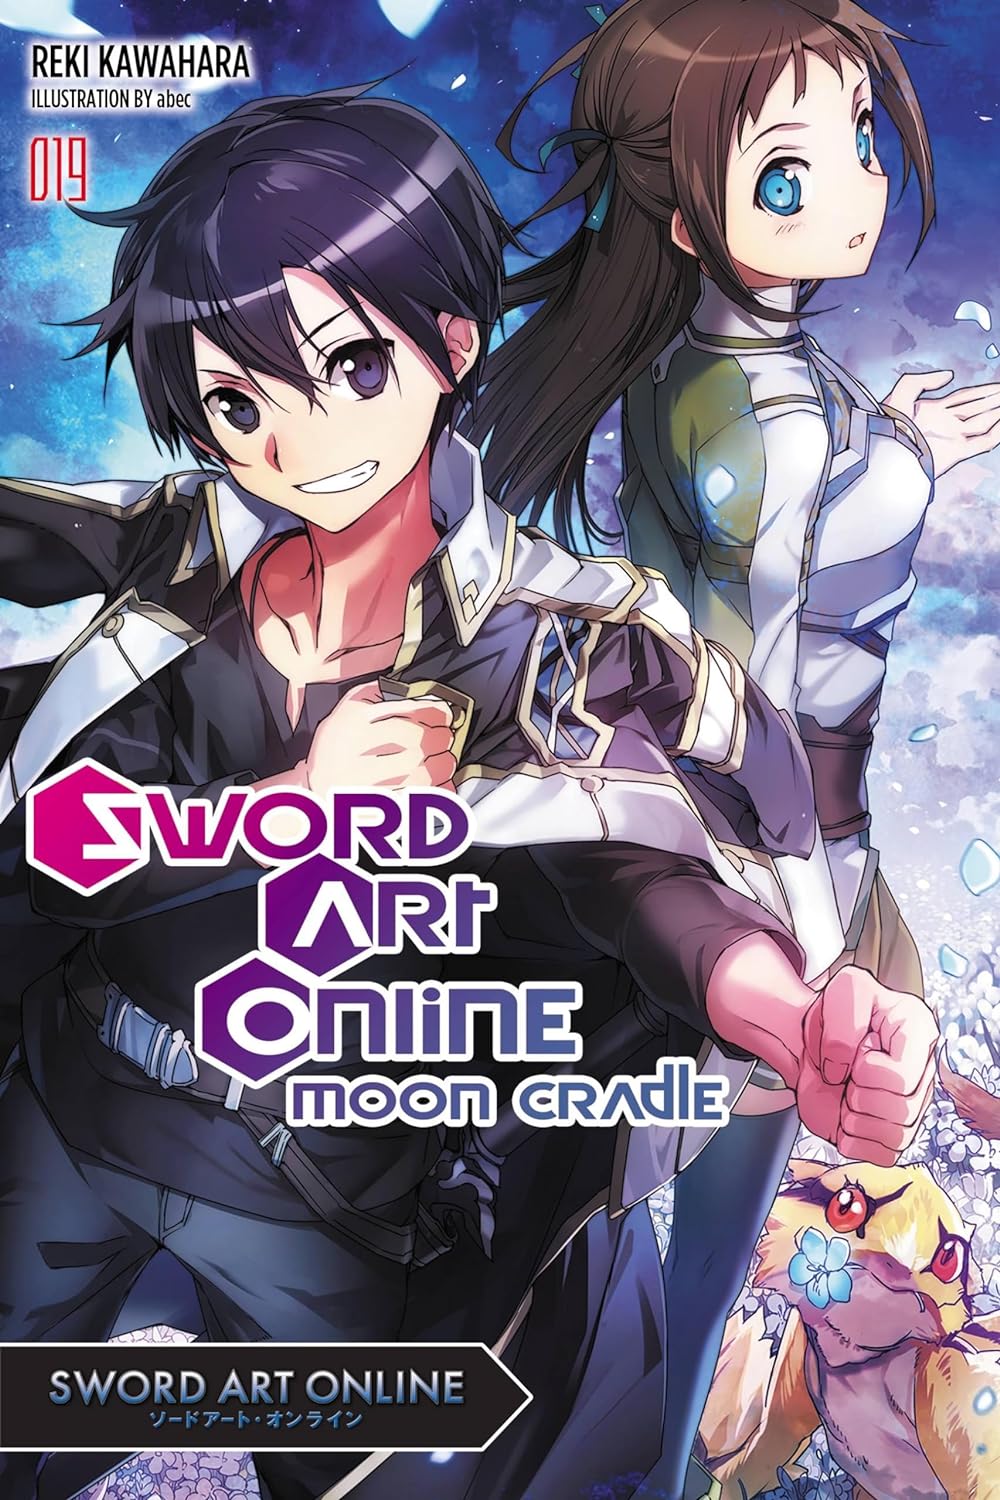 Sword Art Online By Reki Kawahara